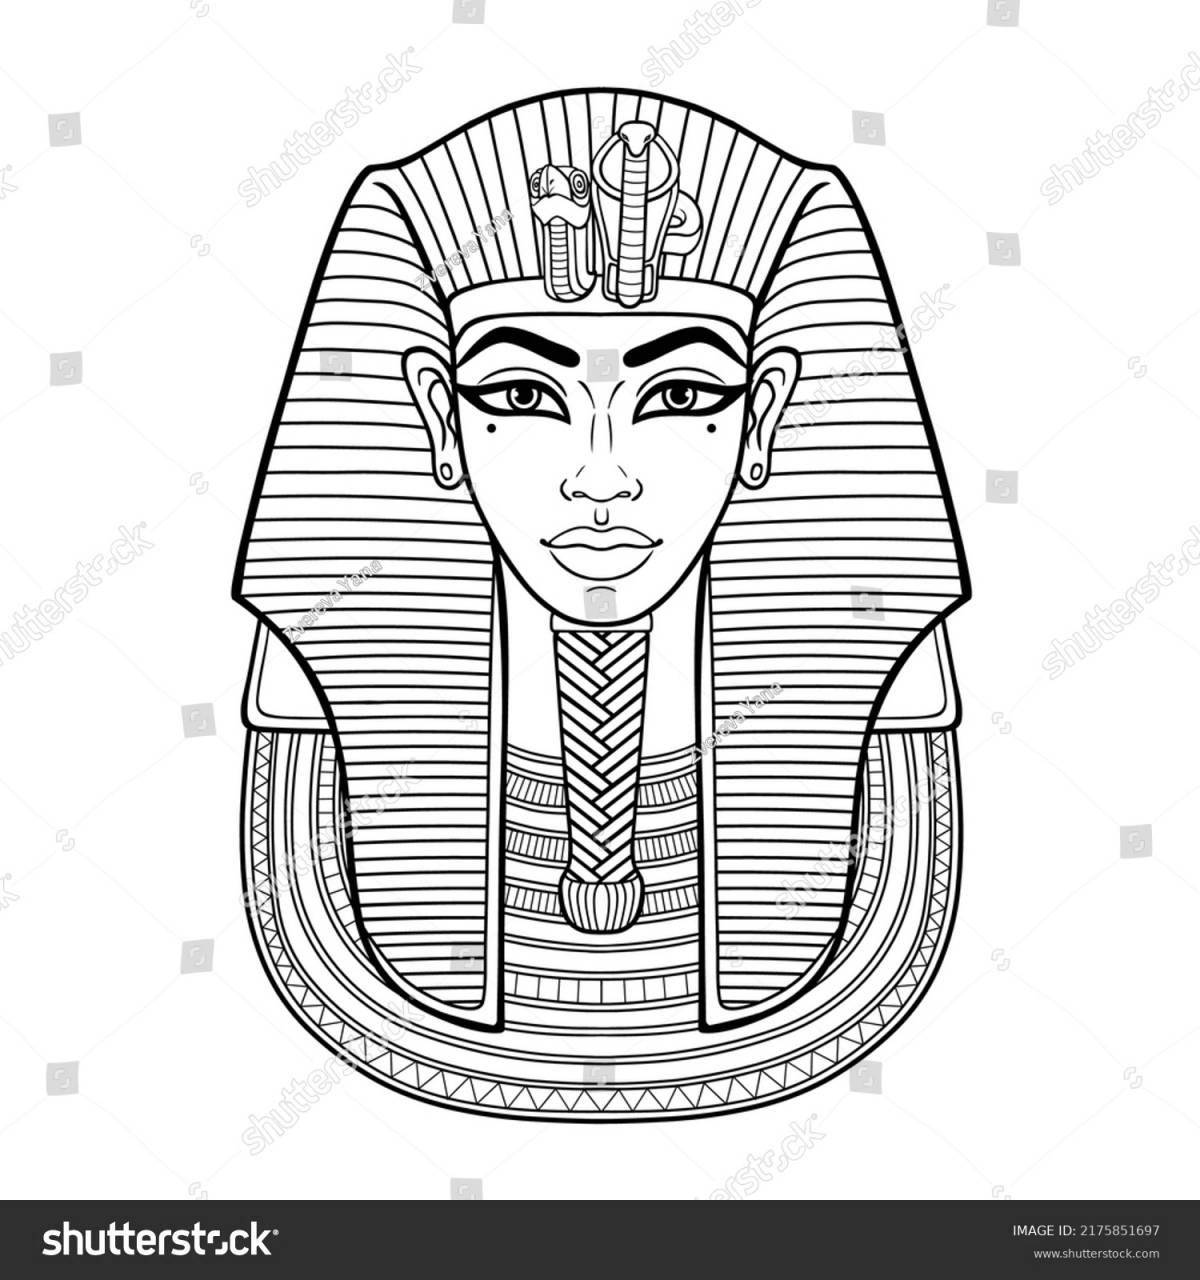 Coloring book shining mask of Pharaoh Tutankhamun